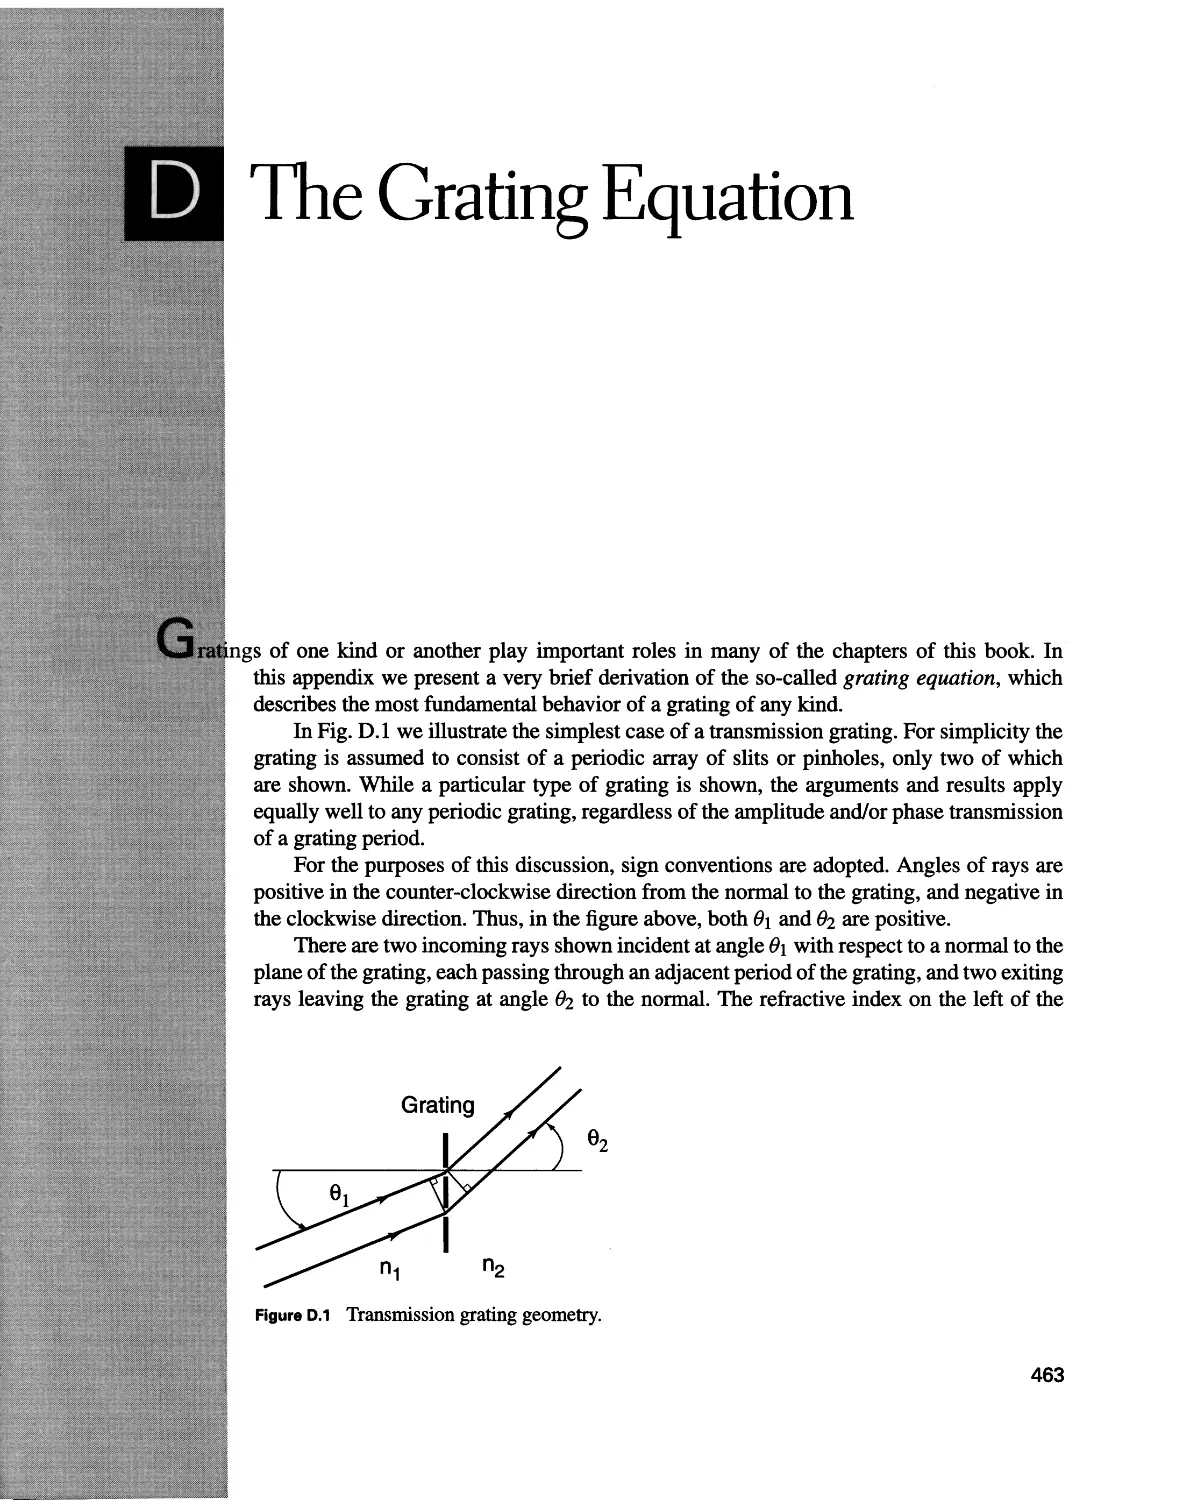 D Hie Grating Equation 463